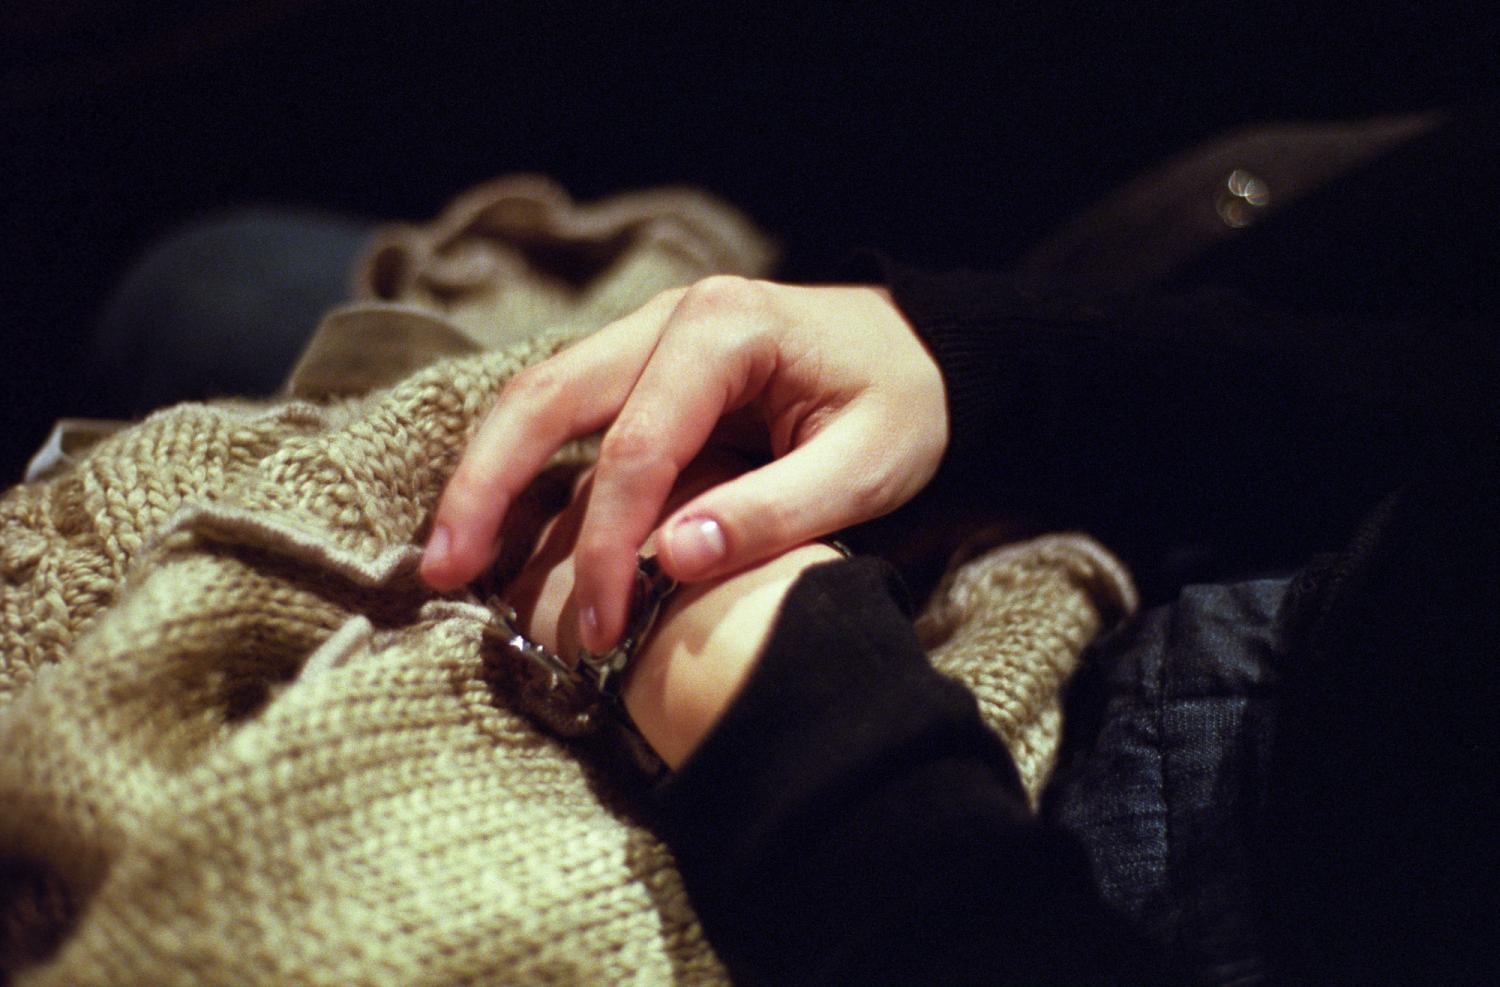 La main droite de Céline consulte sa montre en braille dont elle a soulevé le verre. Paris, mars 2006.